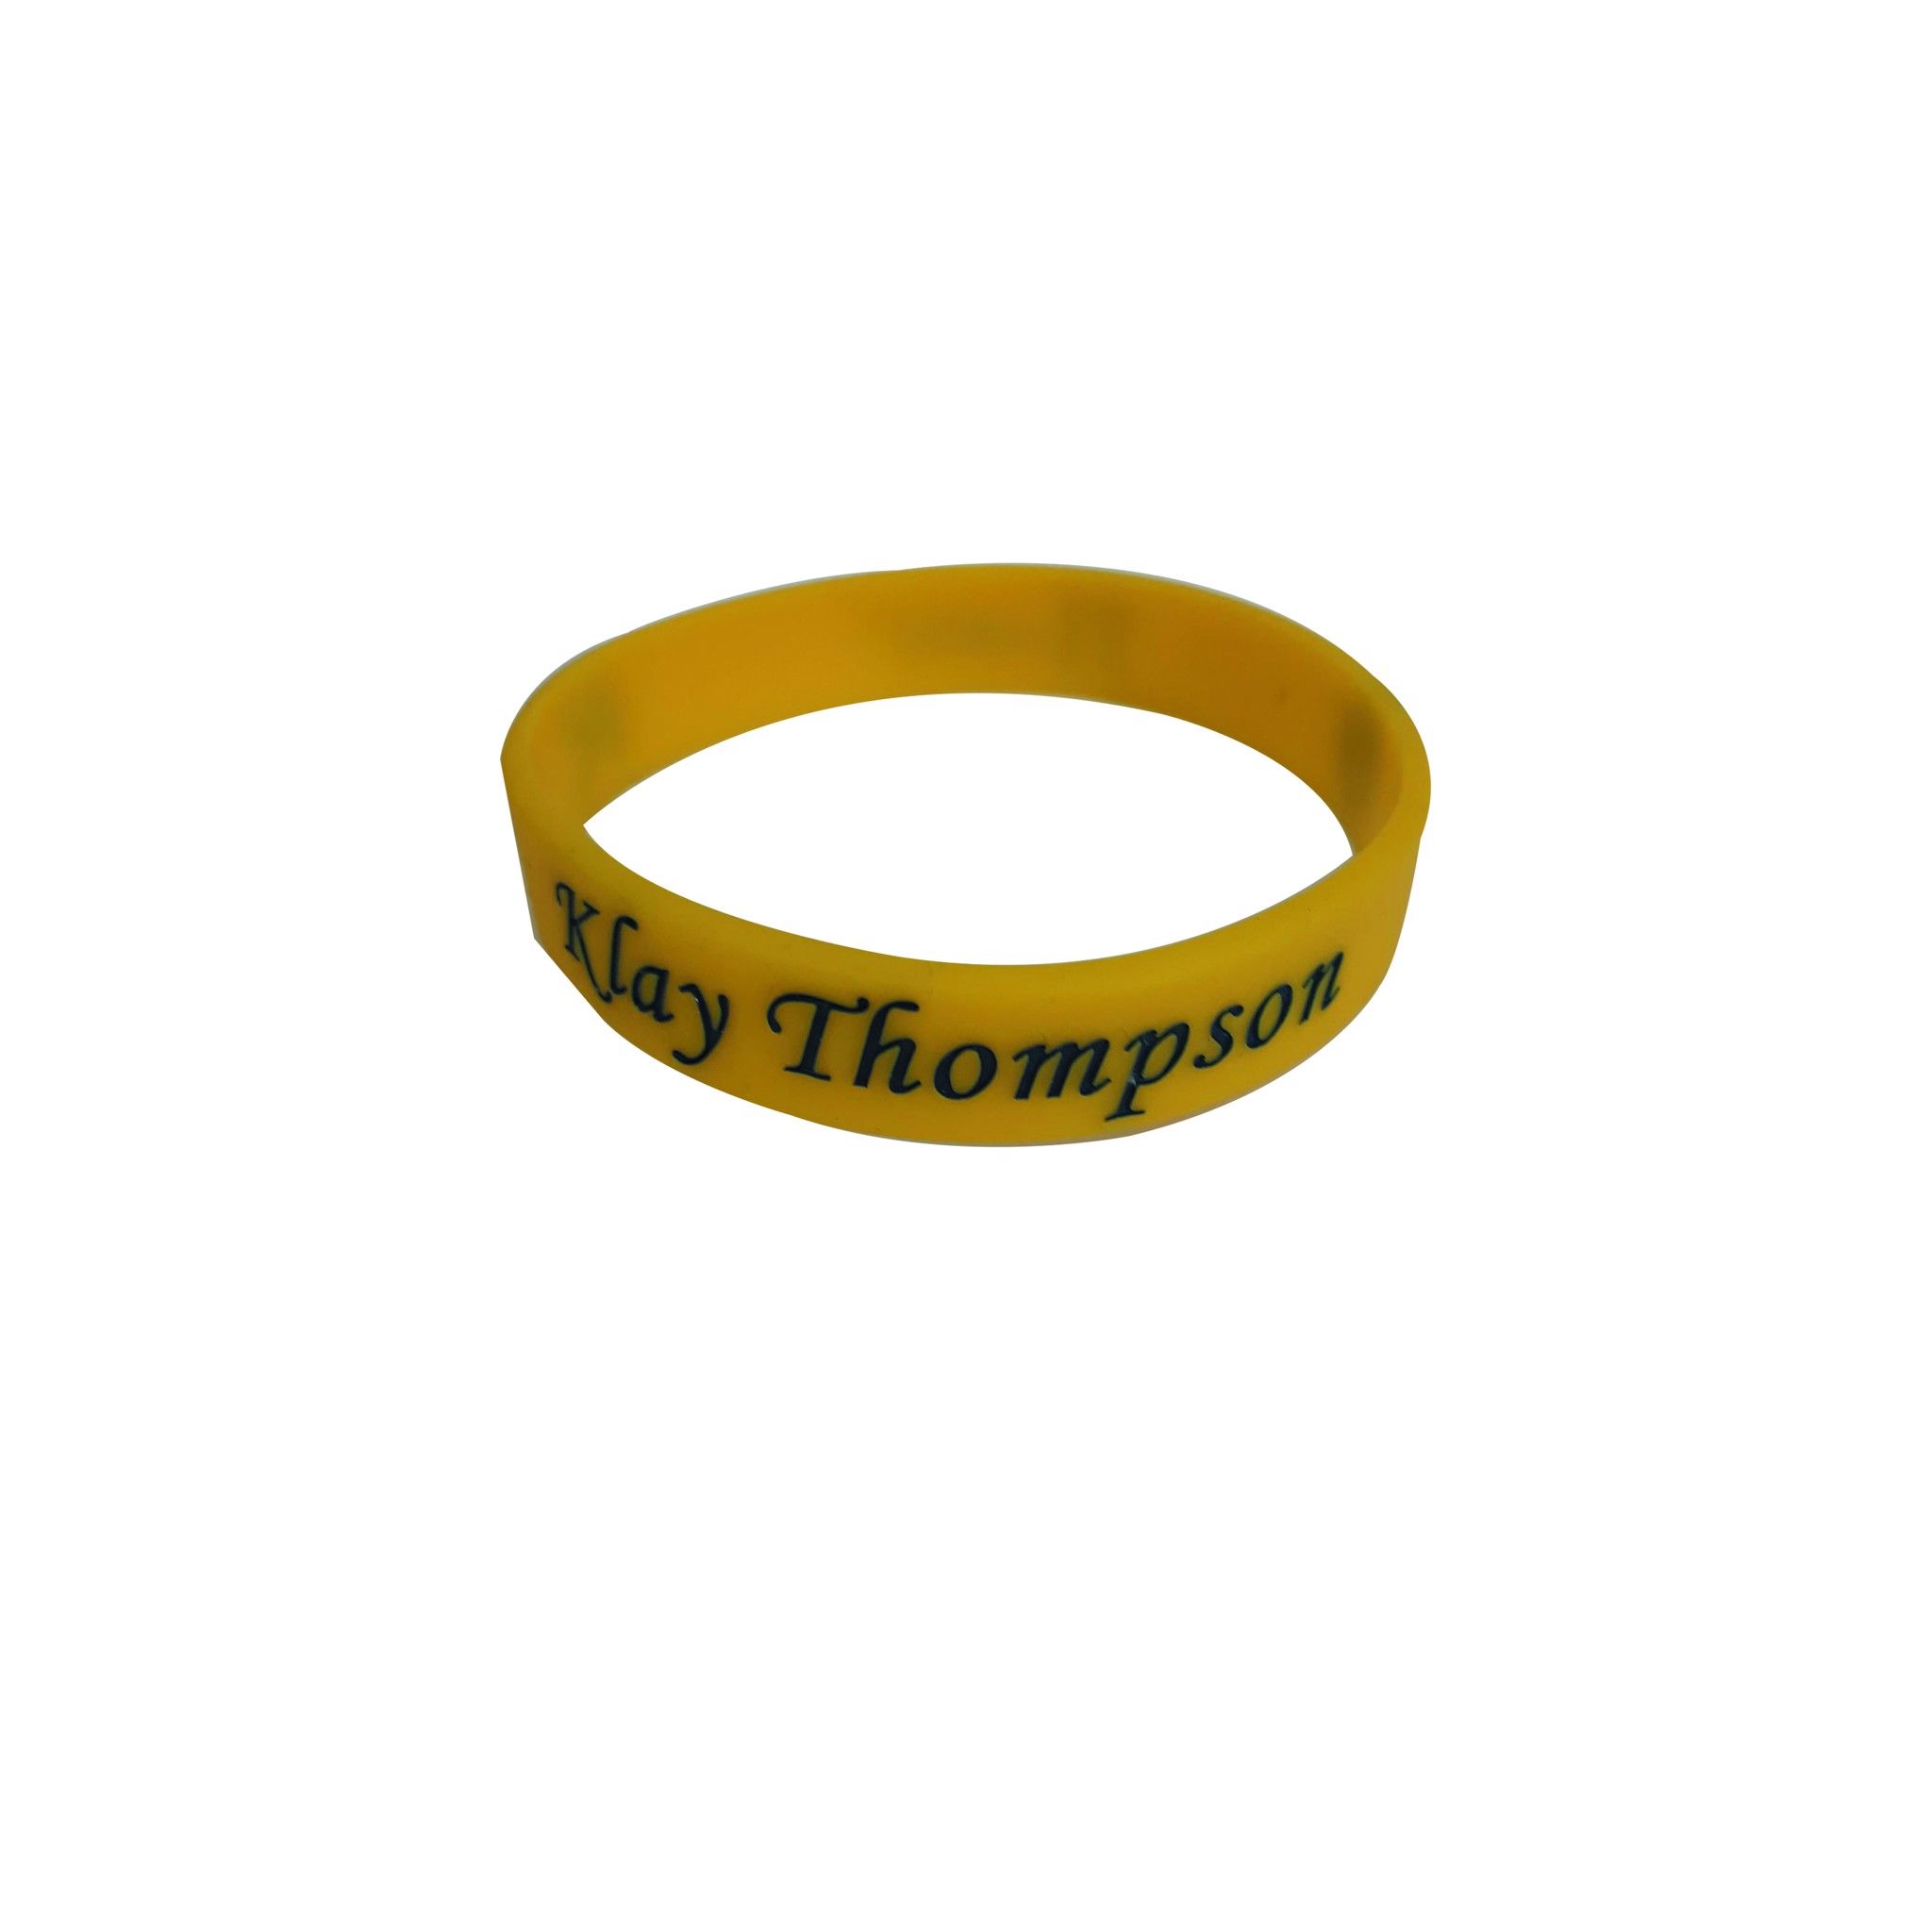 Vòng tay bóng rổ không nút Klay Thomson